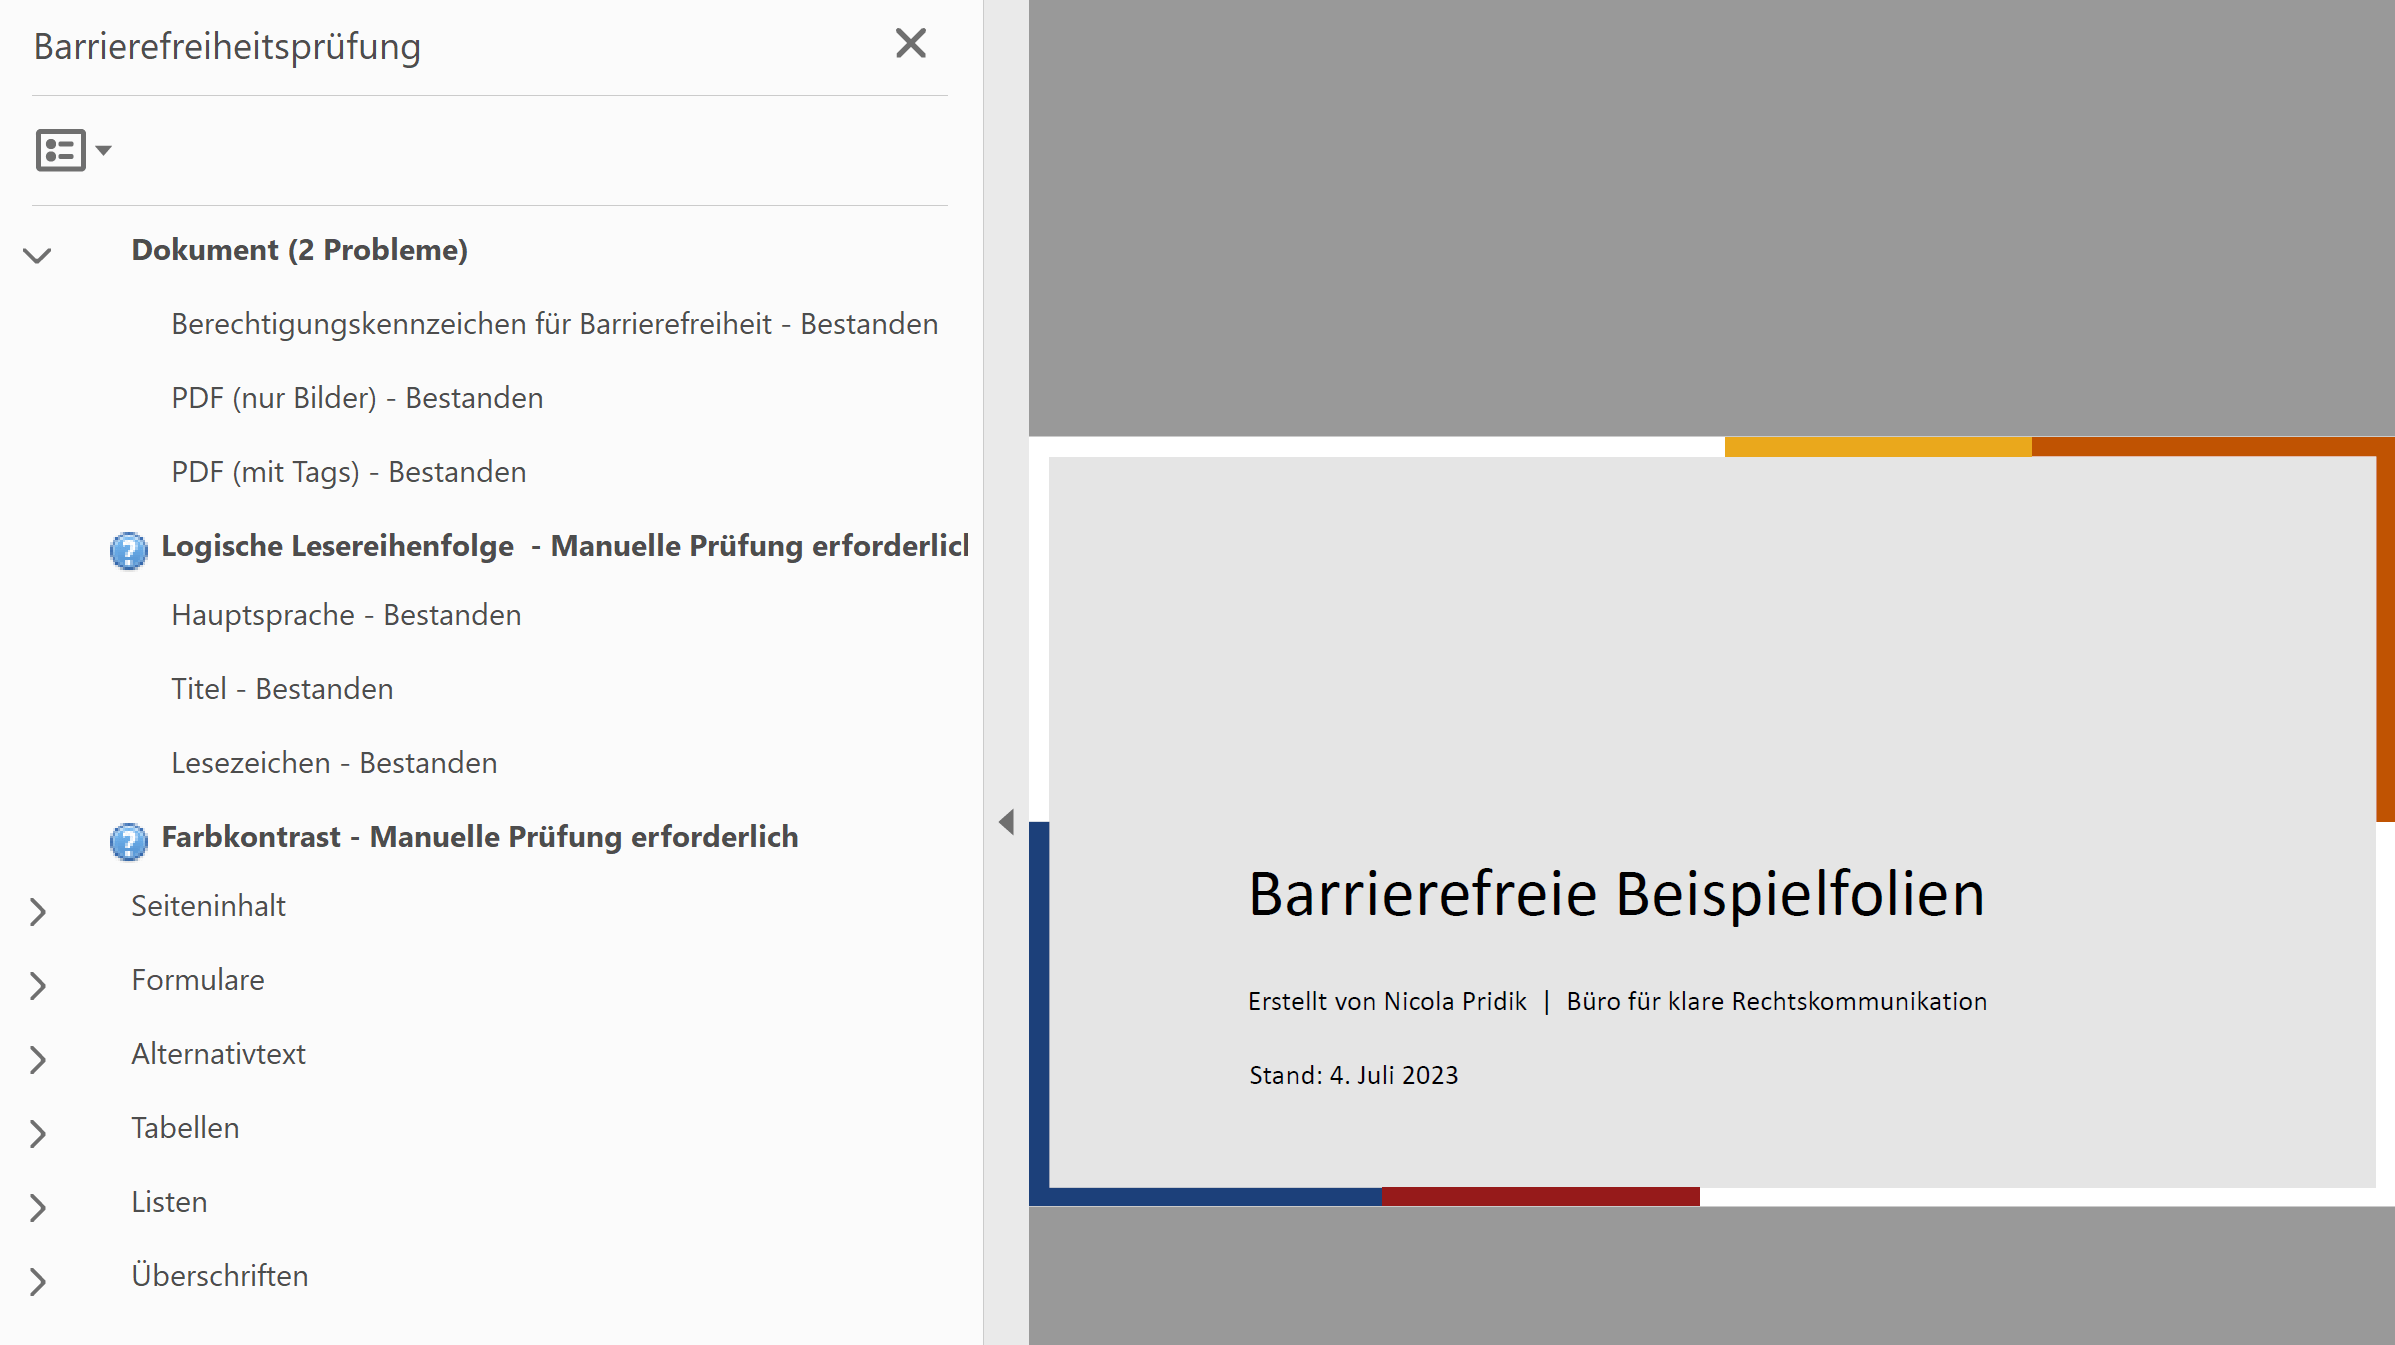 Screenshot des Ergebnisses der Barrierefreiheitsprüfung in Adobe Acrobat; angezeigt werden neben grünen Haken zwei Hinweise darauf, dass die Farbkontraste und Lesereihenfolge manuell zu prüfen sind